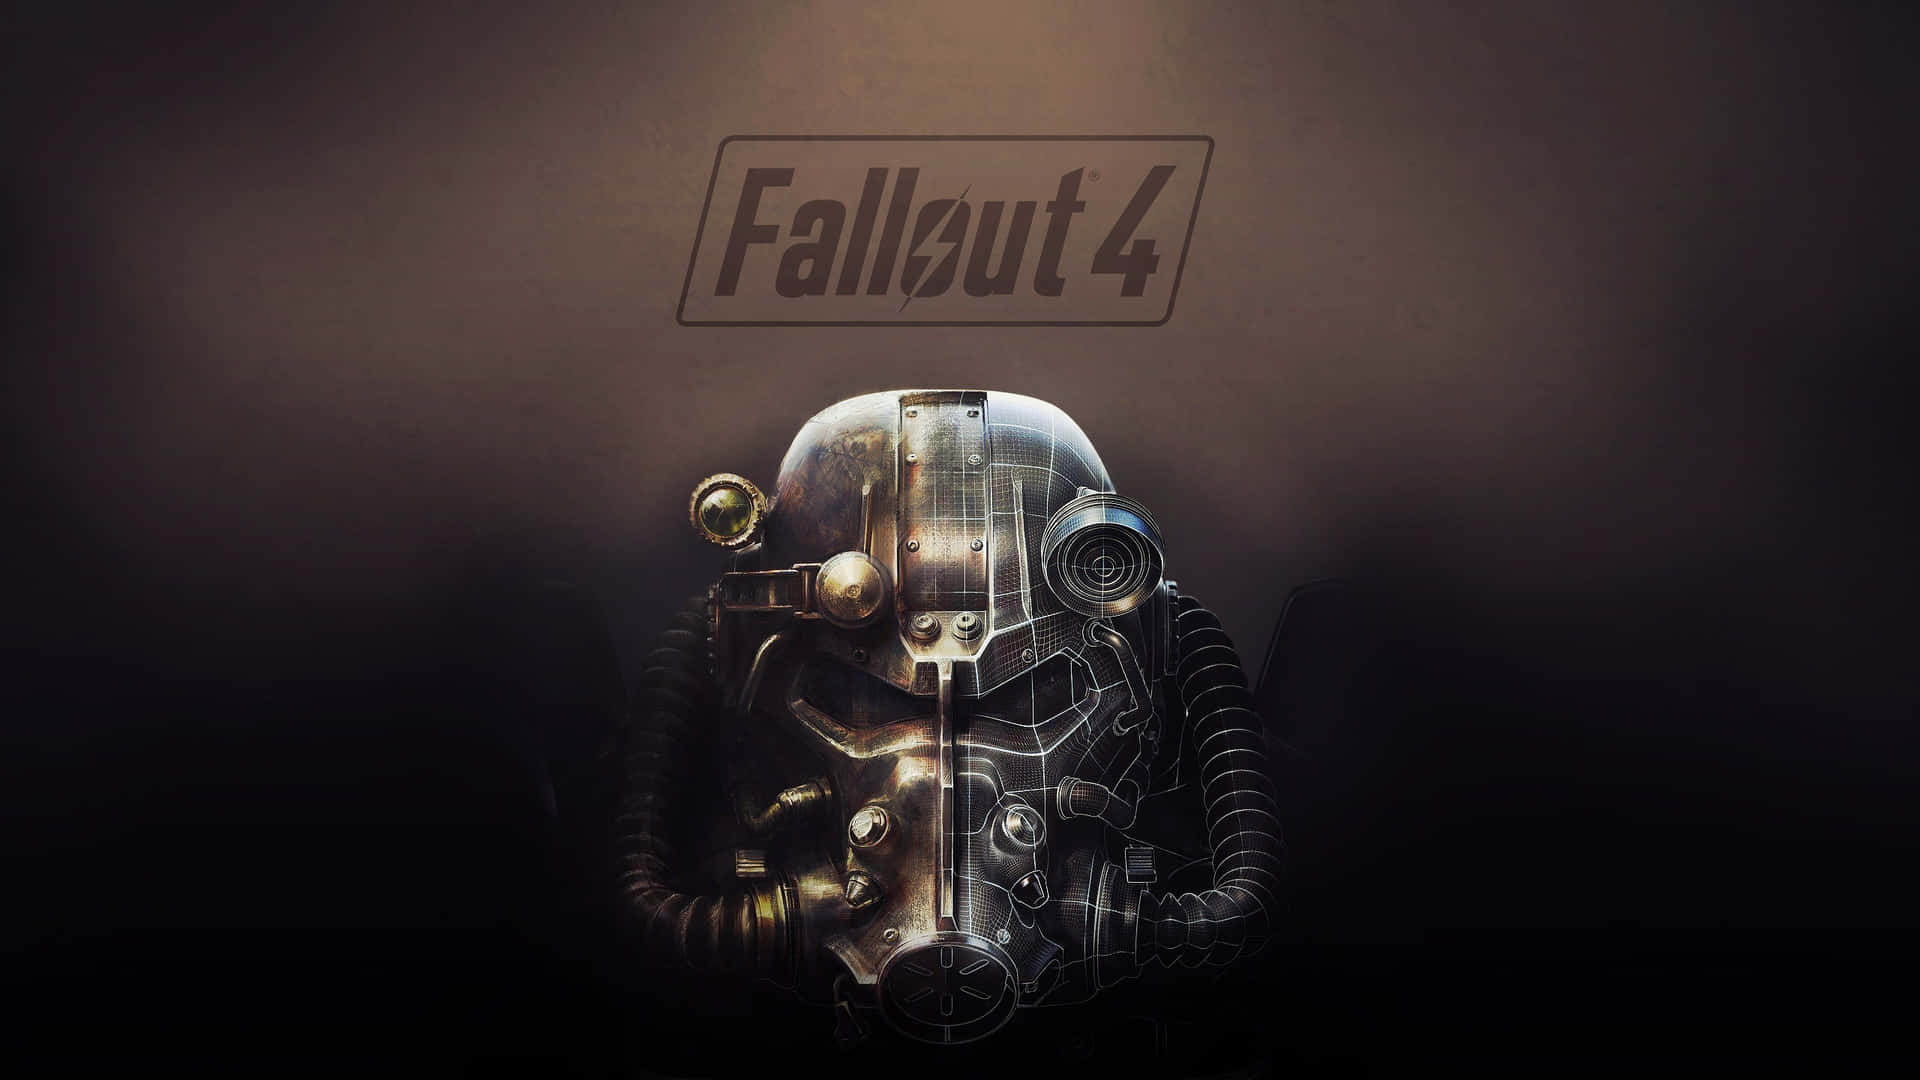 Fallout 4 Wallpaper - Fallout 4 Wallpaper Wallpaper